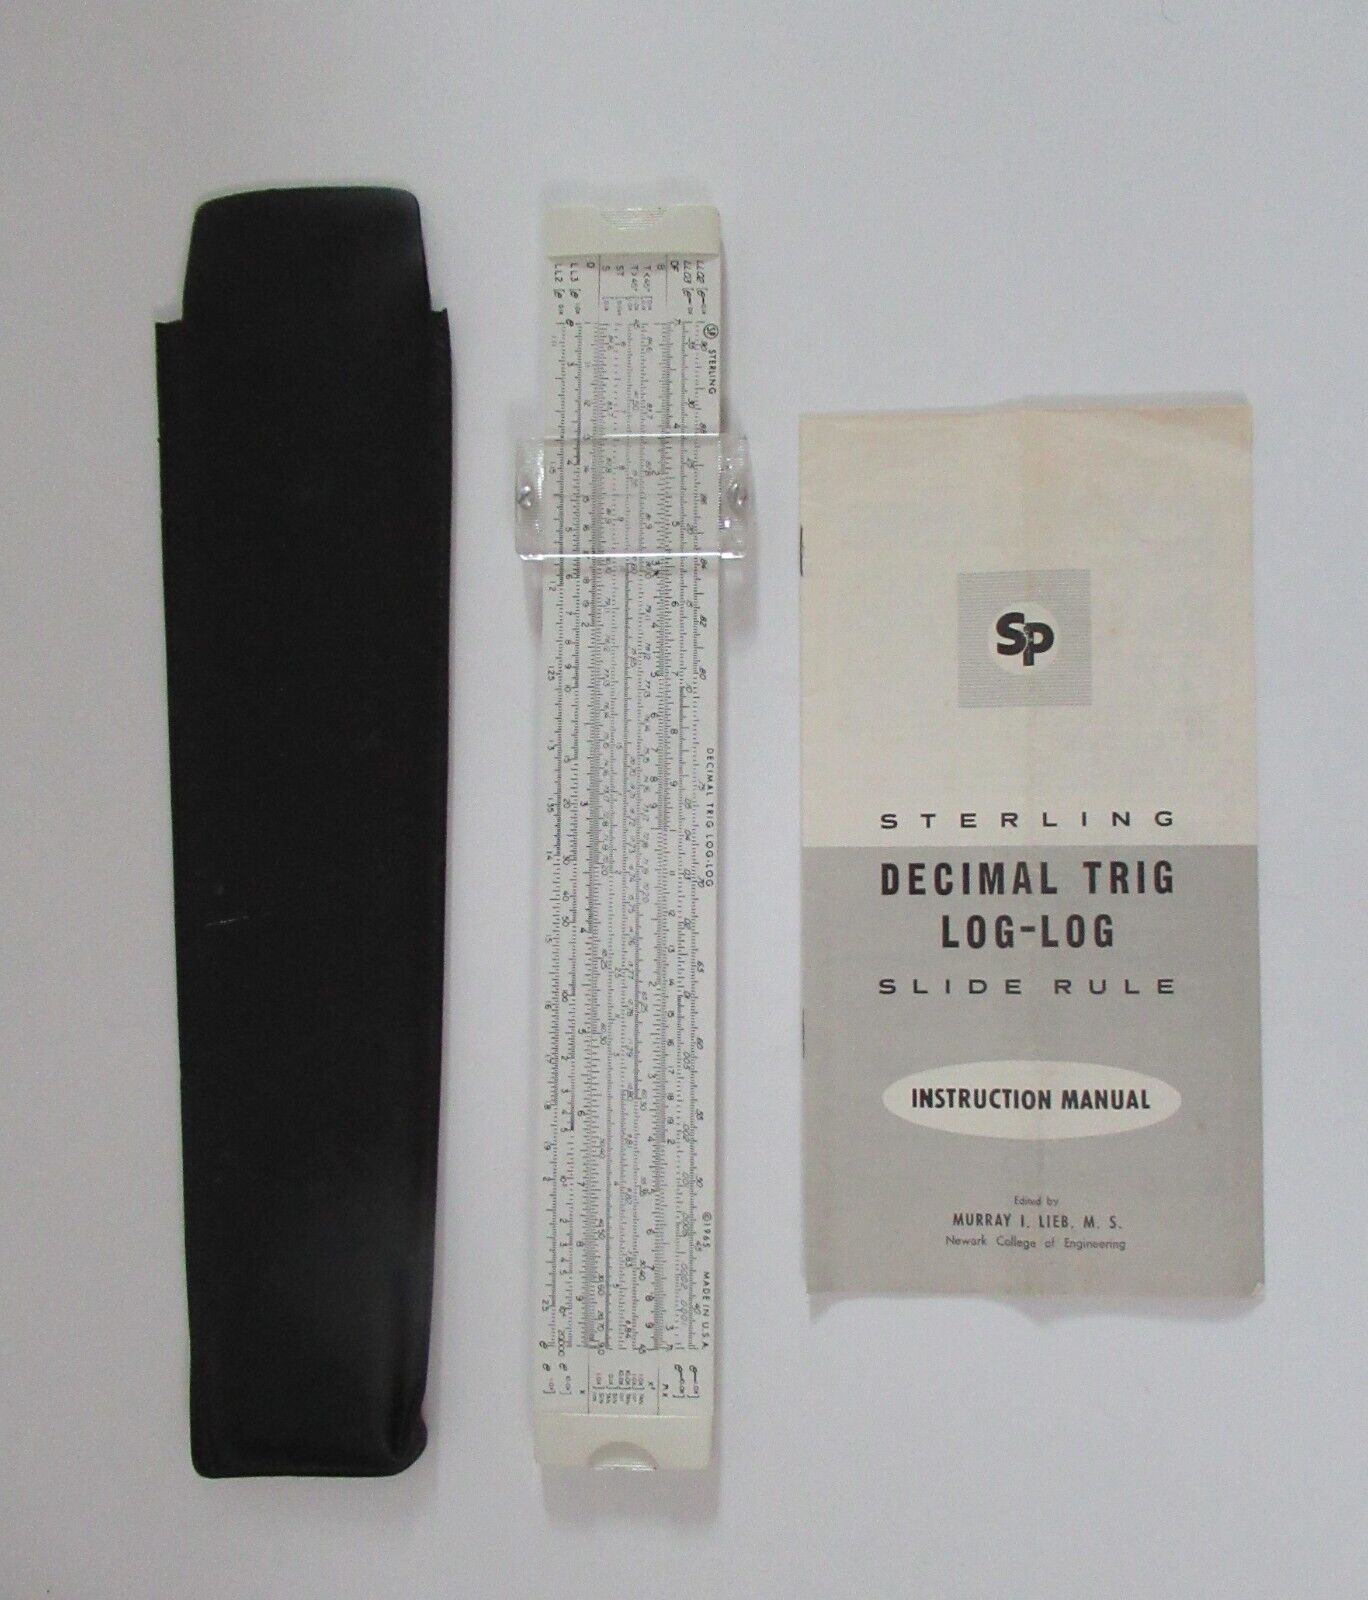 Vintage Sterling Decimal Trig Log-Log Slide Rule with Case and Manual